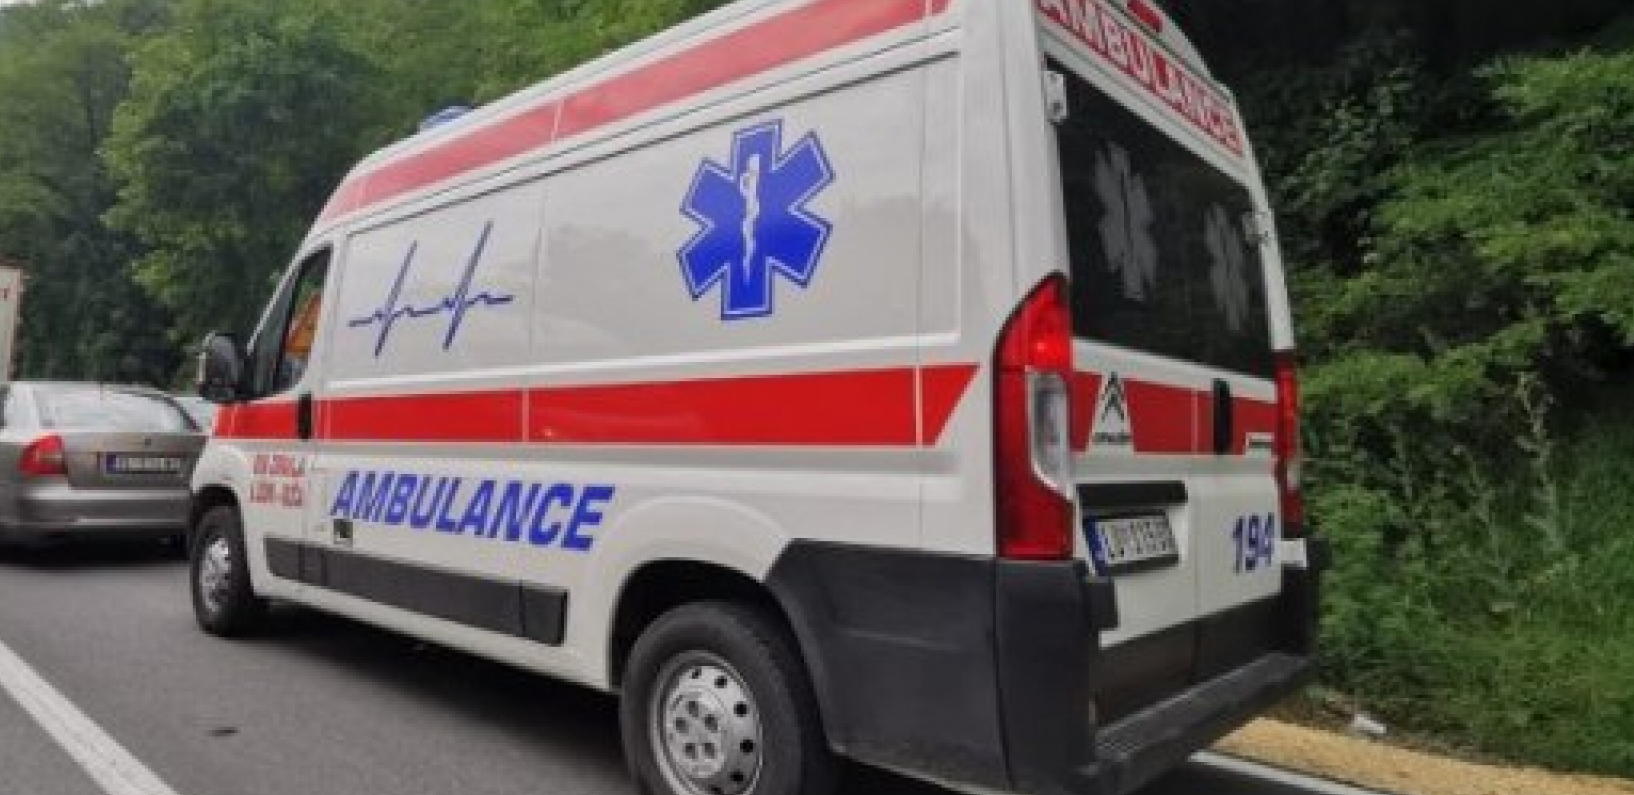 SANITETI PREŠLI GRANICU, NASTAVLJAJU KA BEOGRADU Deca povređena u Bugarskoj stigla u Srbiju